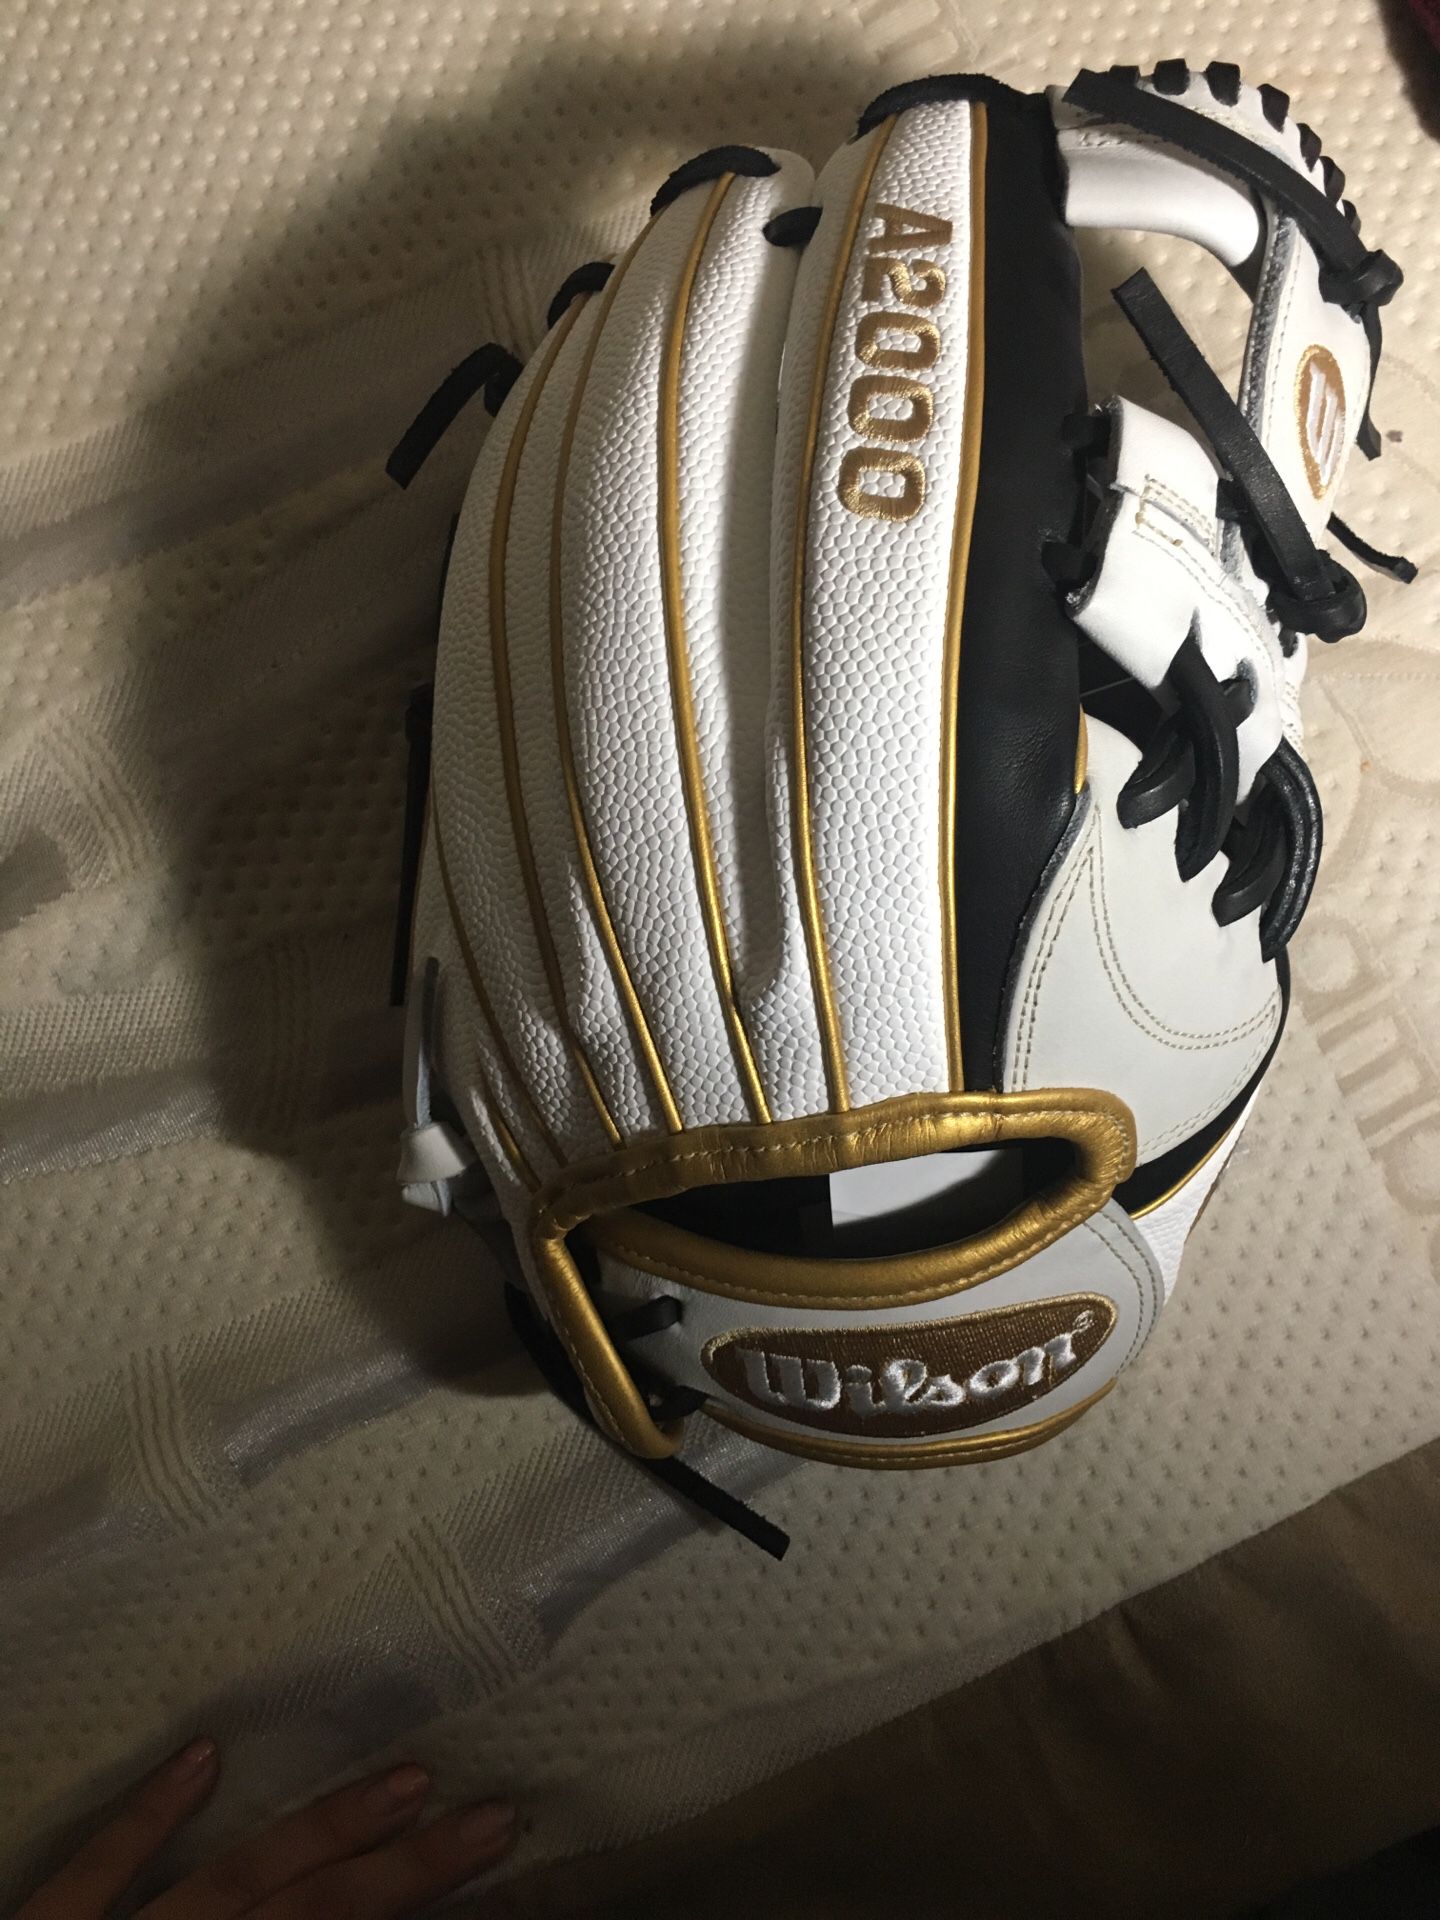 Brand new softball glove